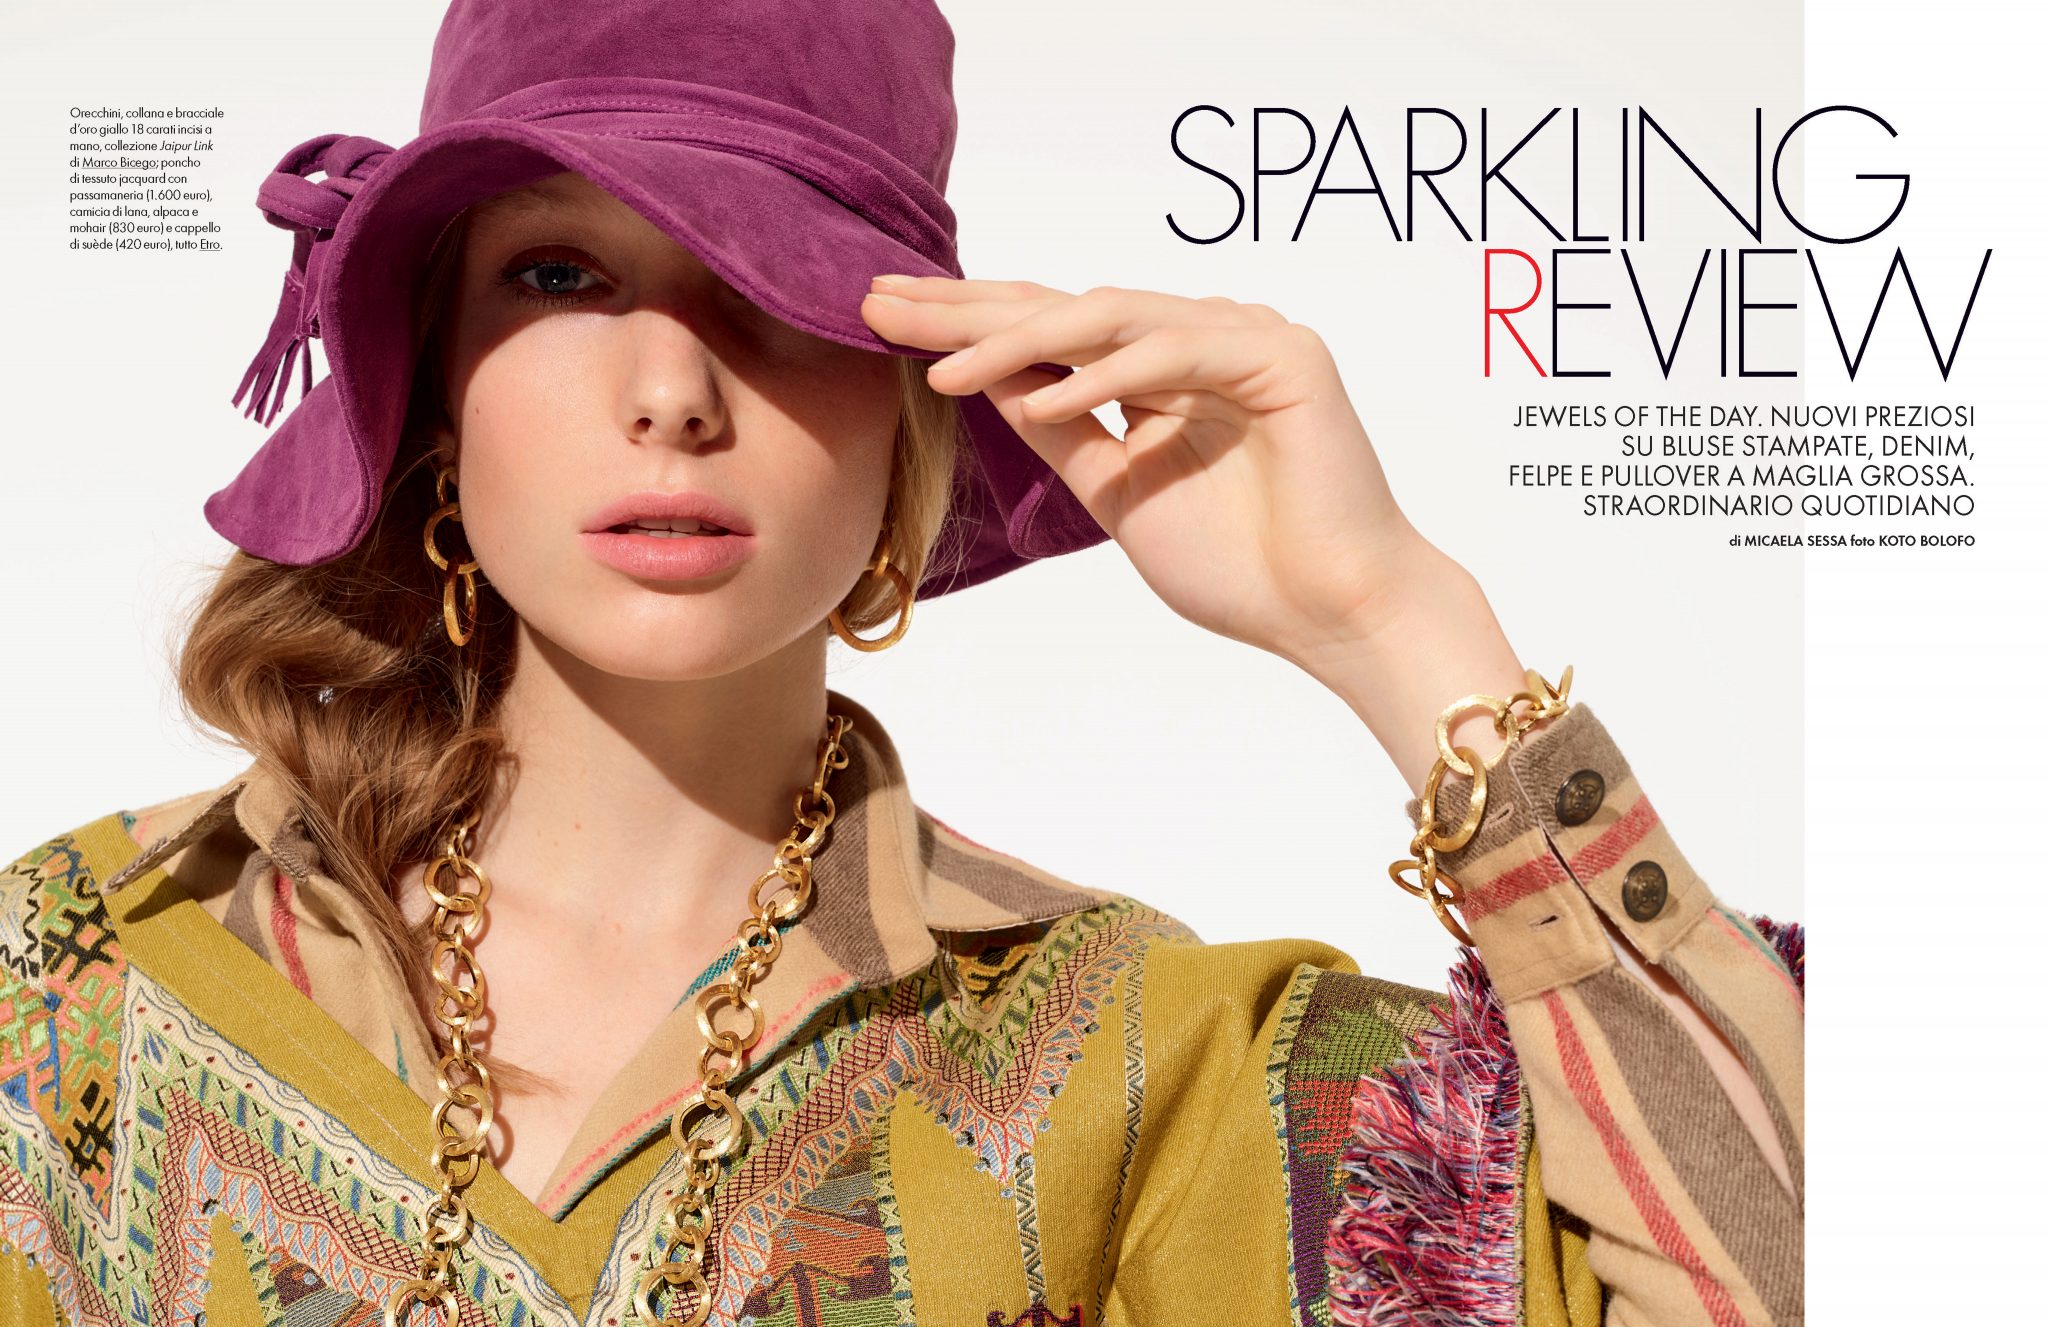 Koto Bolofo | Elle Italia: Sparkling Review | 1